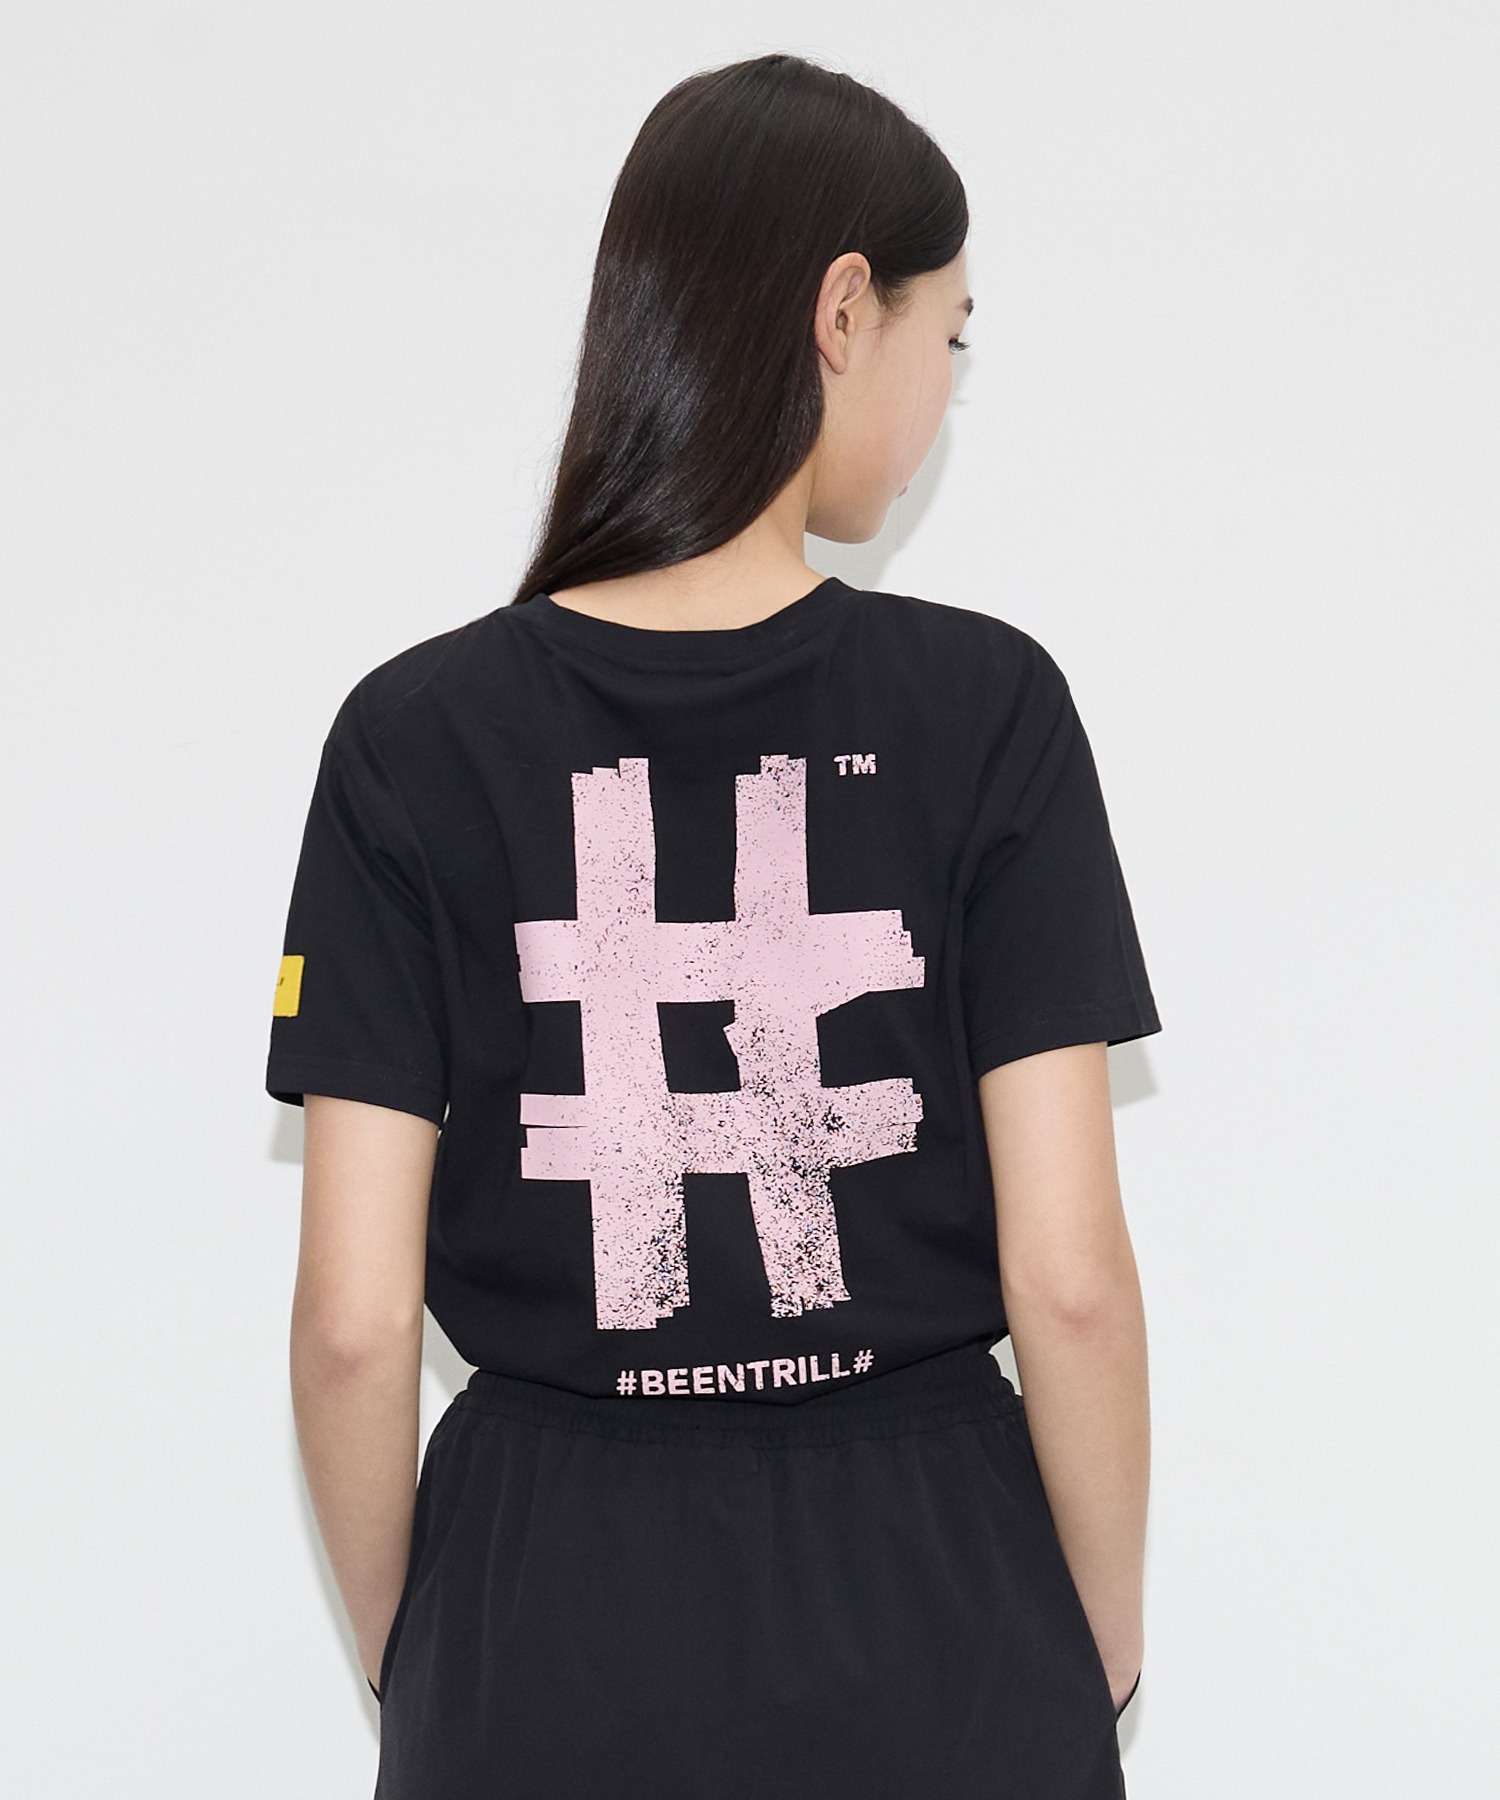 여성 스탬프 해시태그 컴포트핏 반팔 티셔츠(블랙)